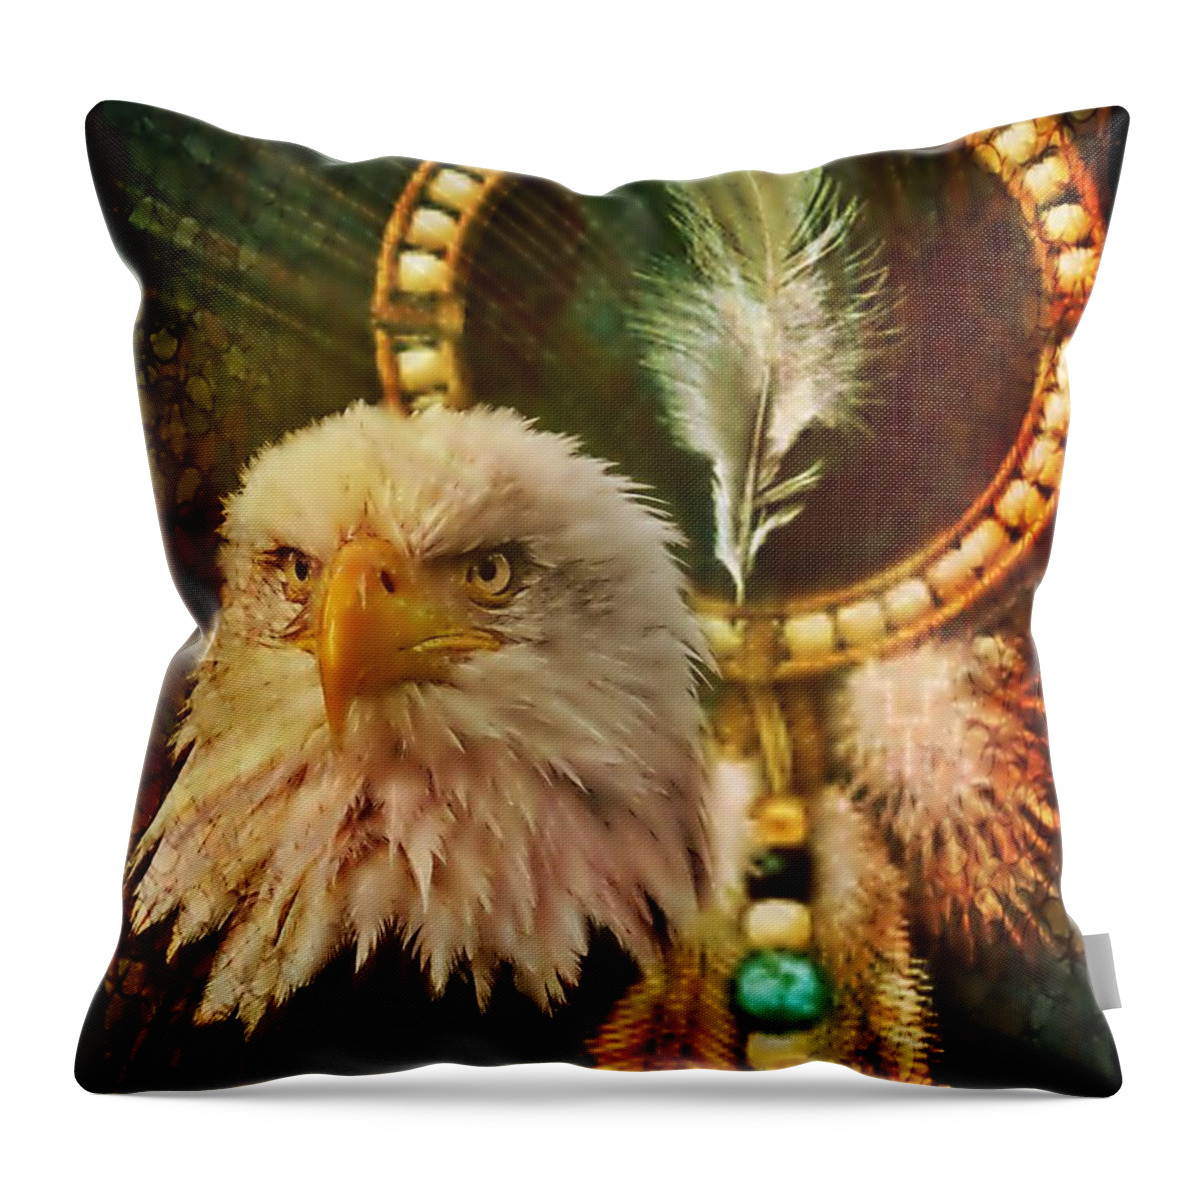 Eaglehead Throw Pillow featuring the digital art Eaglehead by Maria Urso